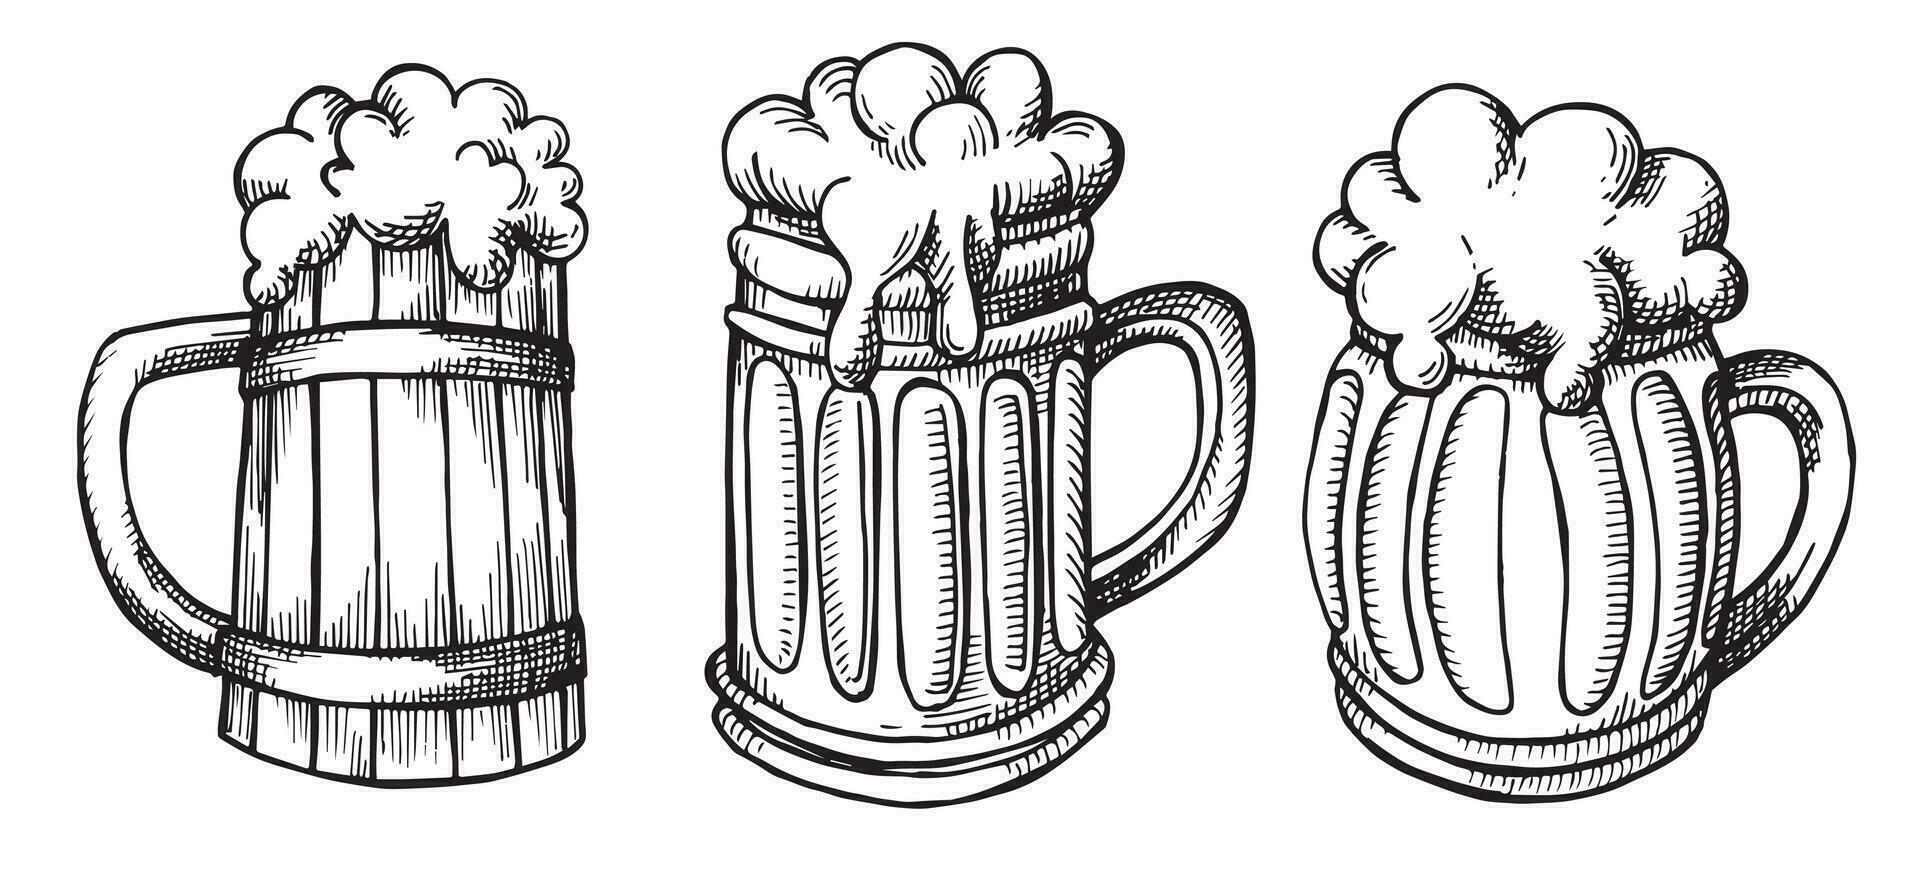 Vektor Zeichnung einstellen von Bier Tassen im skizzieren Stil. Jahrgang Illustration auf das Thema von Oktober fest